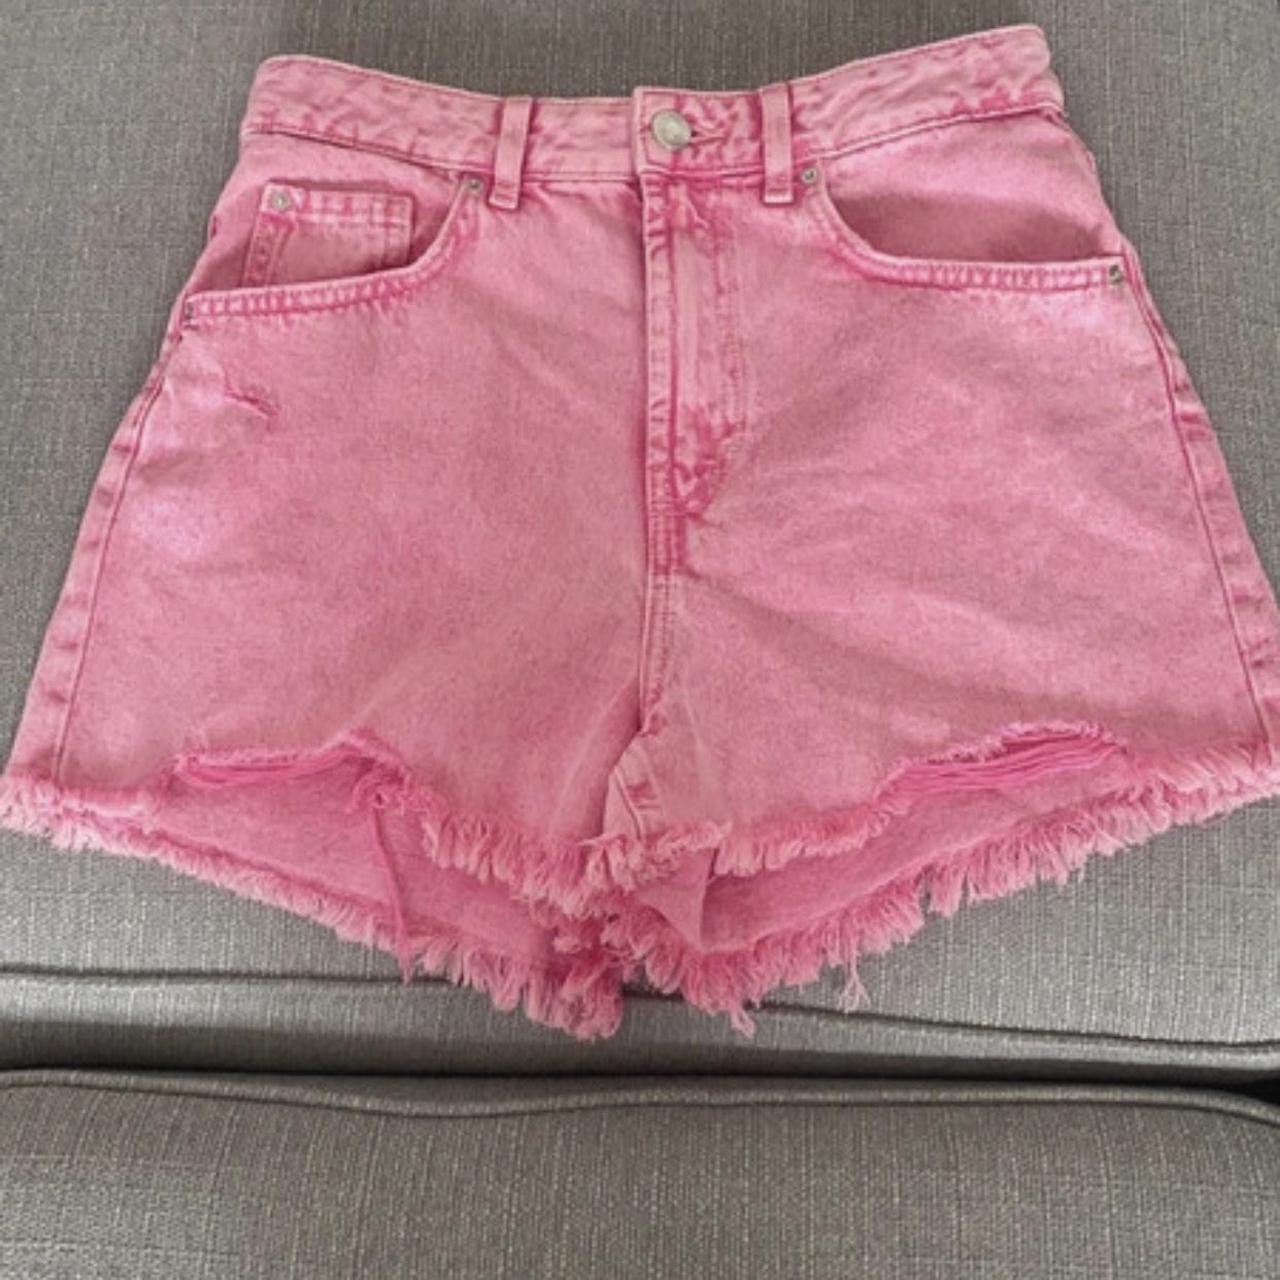 Hot pink Primark shorts - never worn #holiday... - Depop